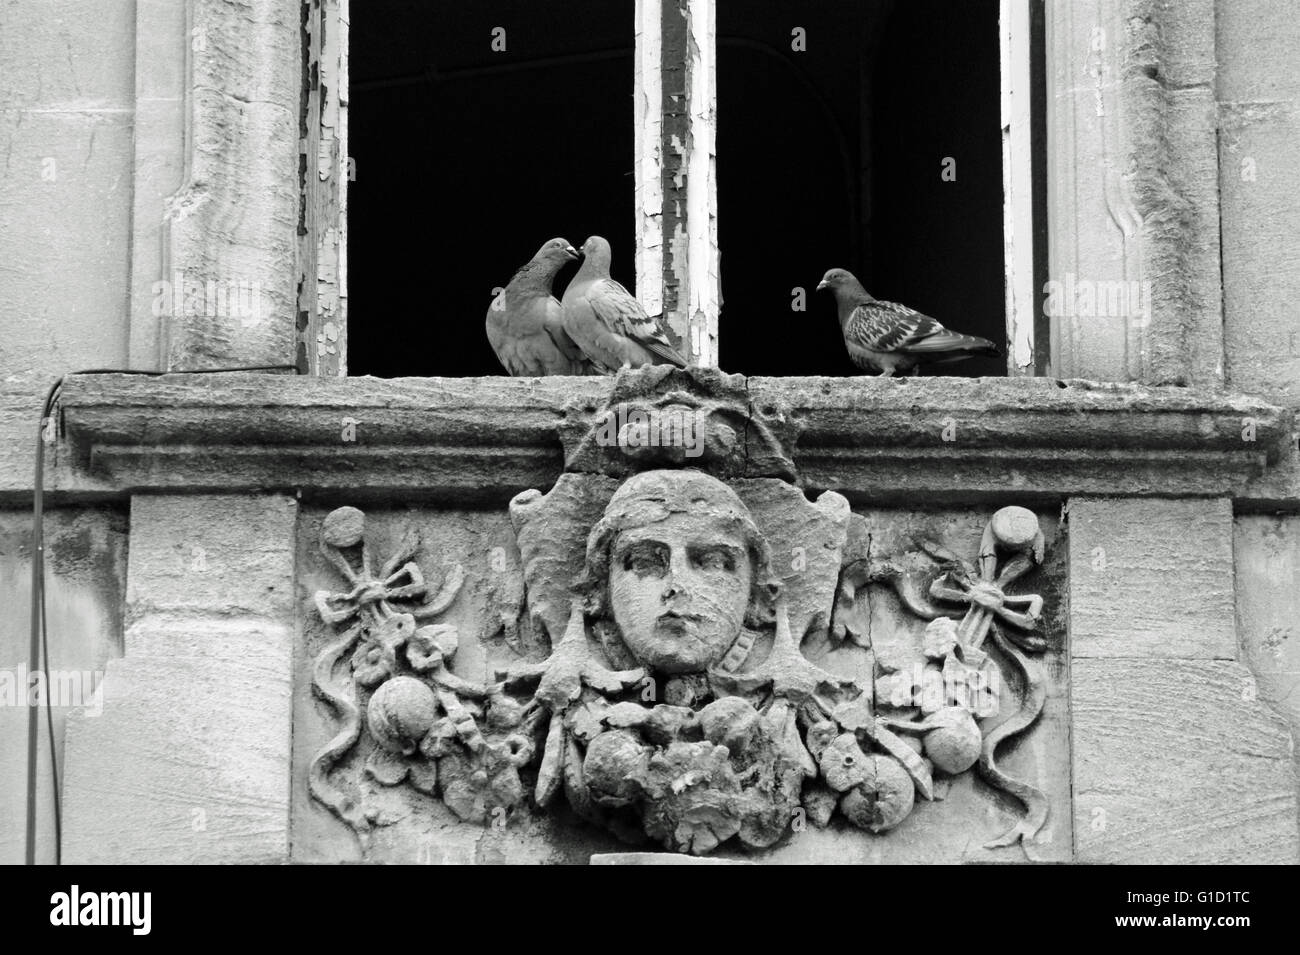 2 Tauben zeigen gerne jeweils ein anderes verweilt eine 3. Taube ist direkt bei ihnen... sperren, das Fenster ist eine alte viktorianische Fenster. Stockfoto